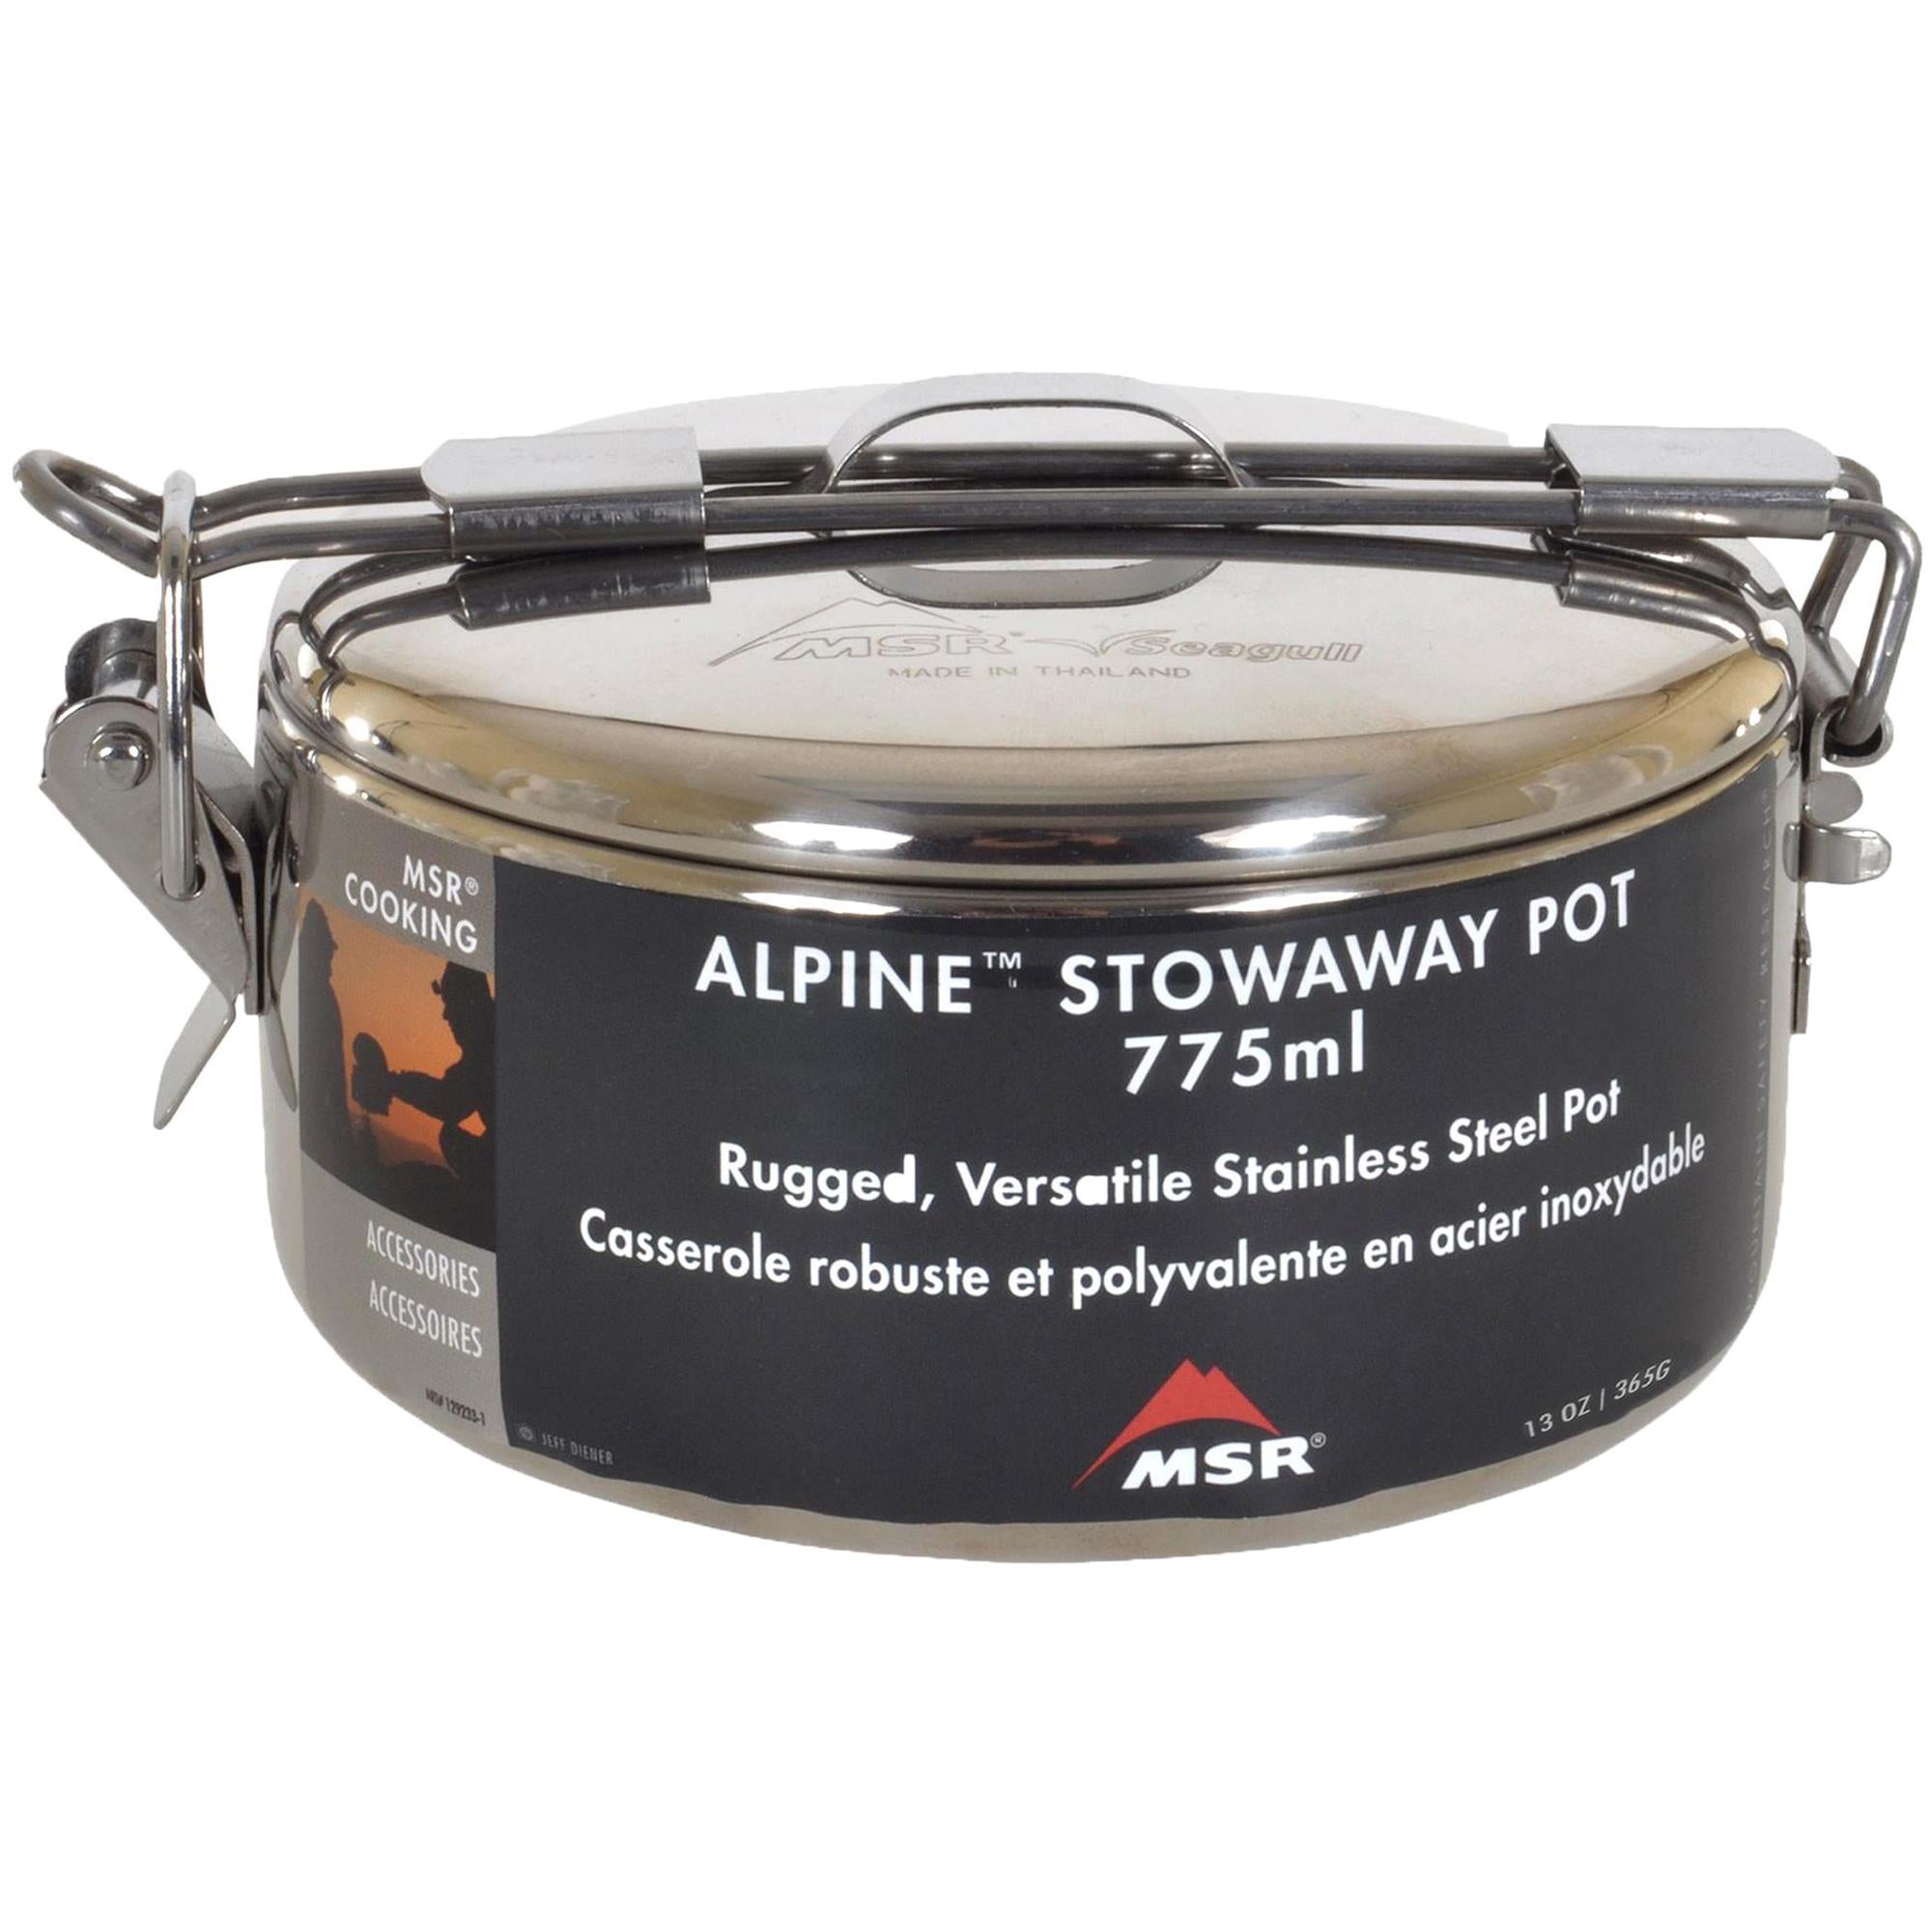 MSR Alpine Stowaway Stainless Steel Pot - 775ml